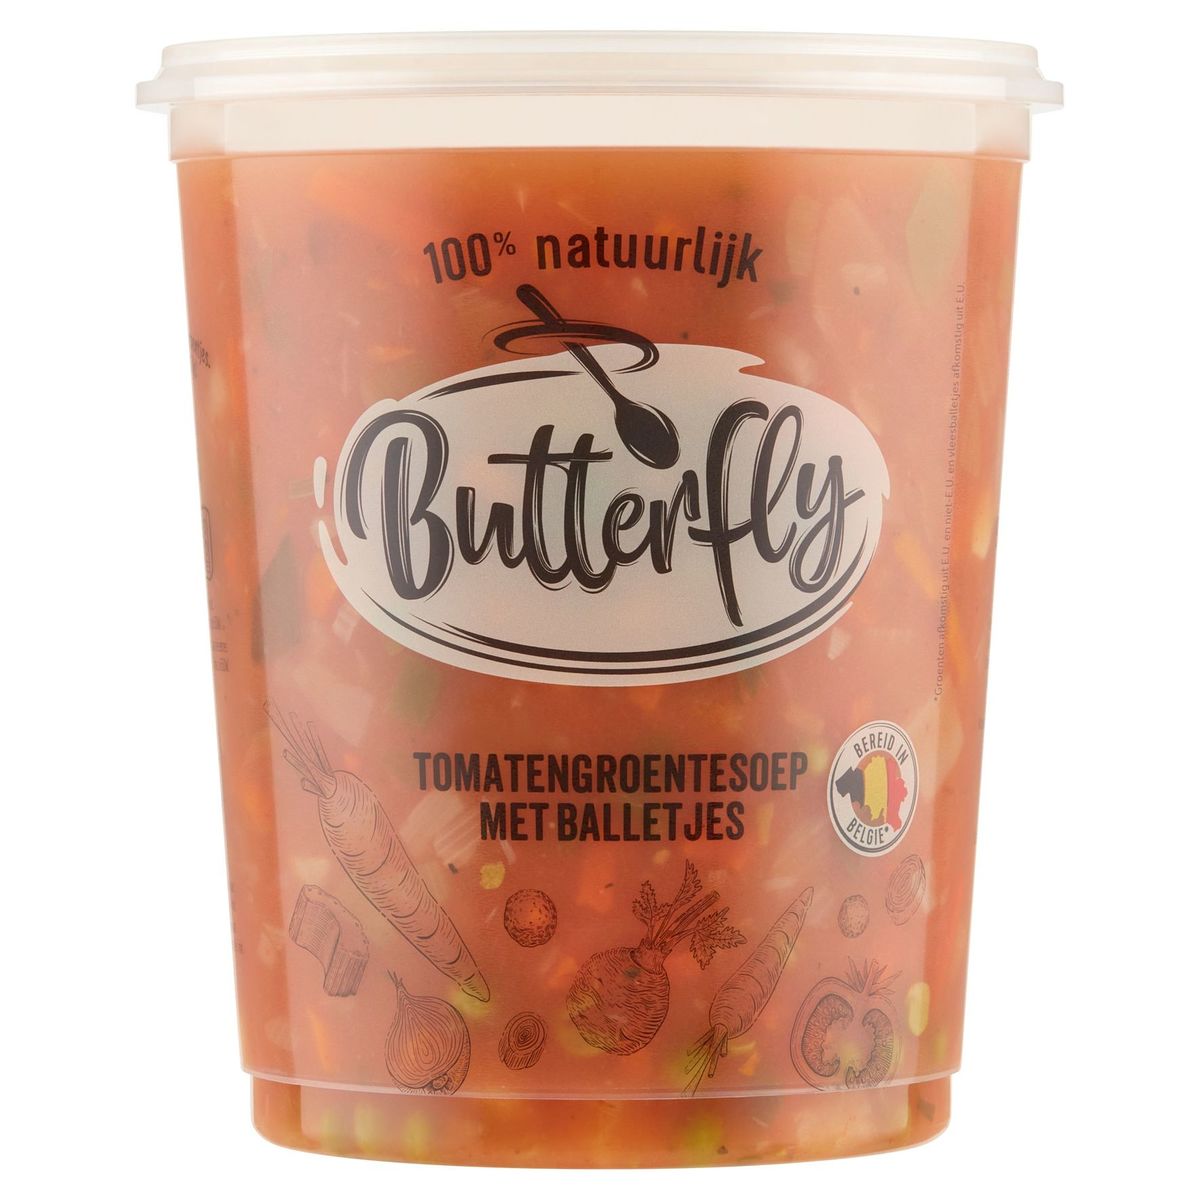 Butterfly Soupe de Tomates aux Légumes avec Boulettes 950 ml